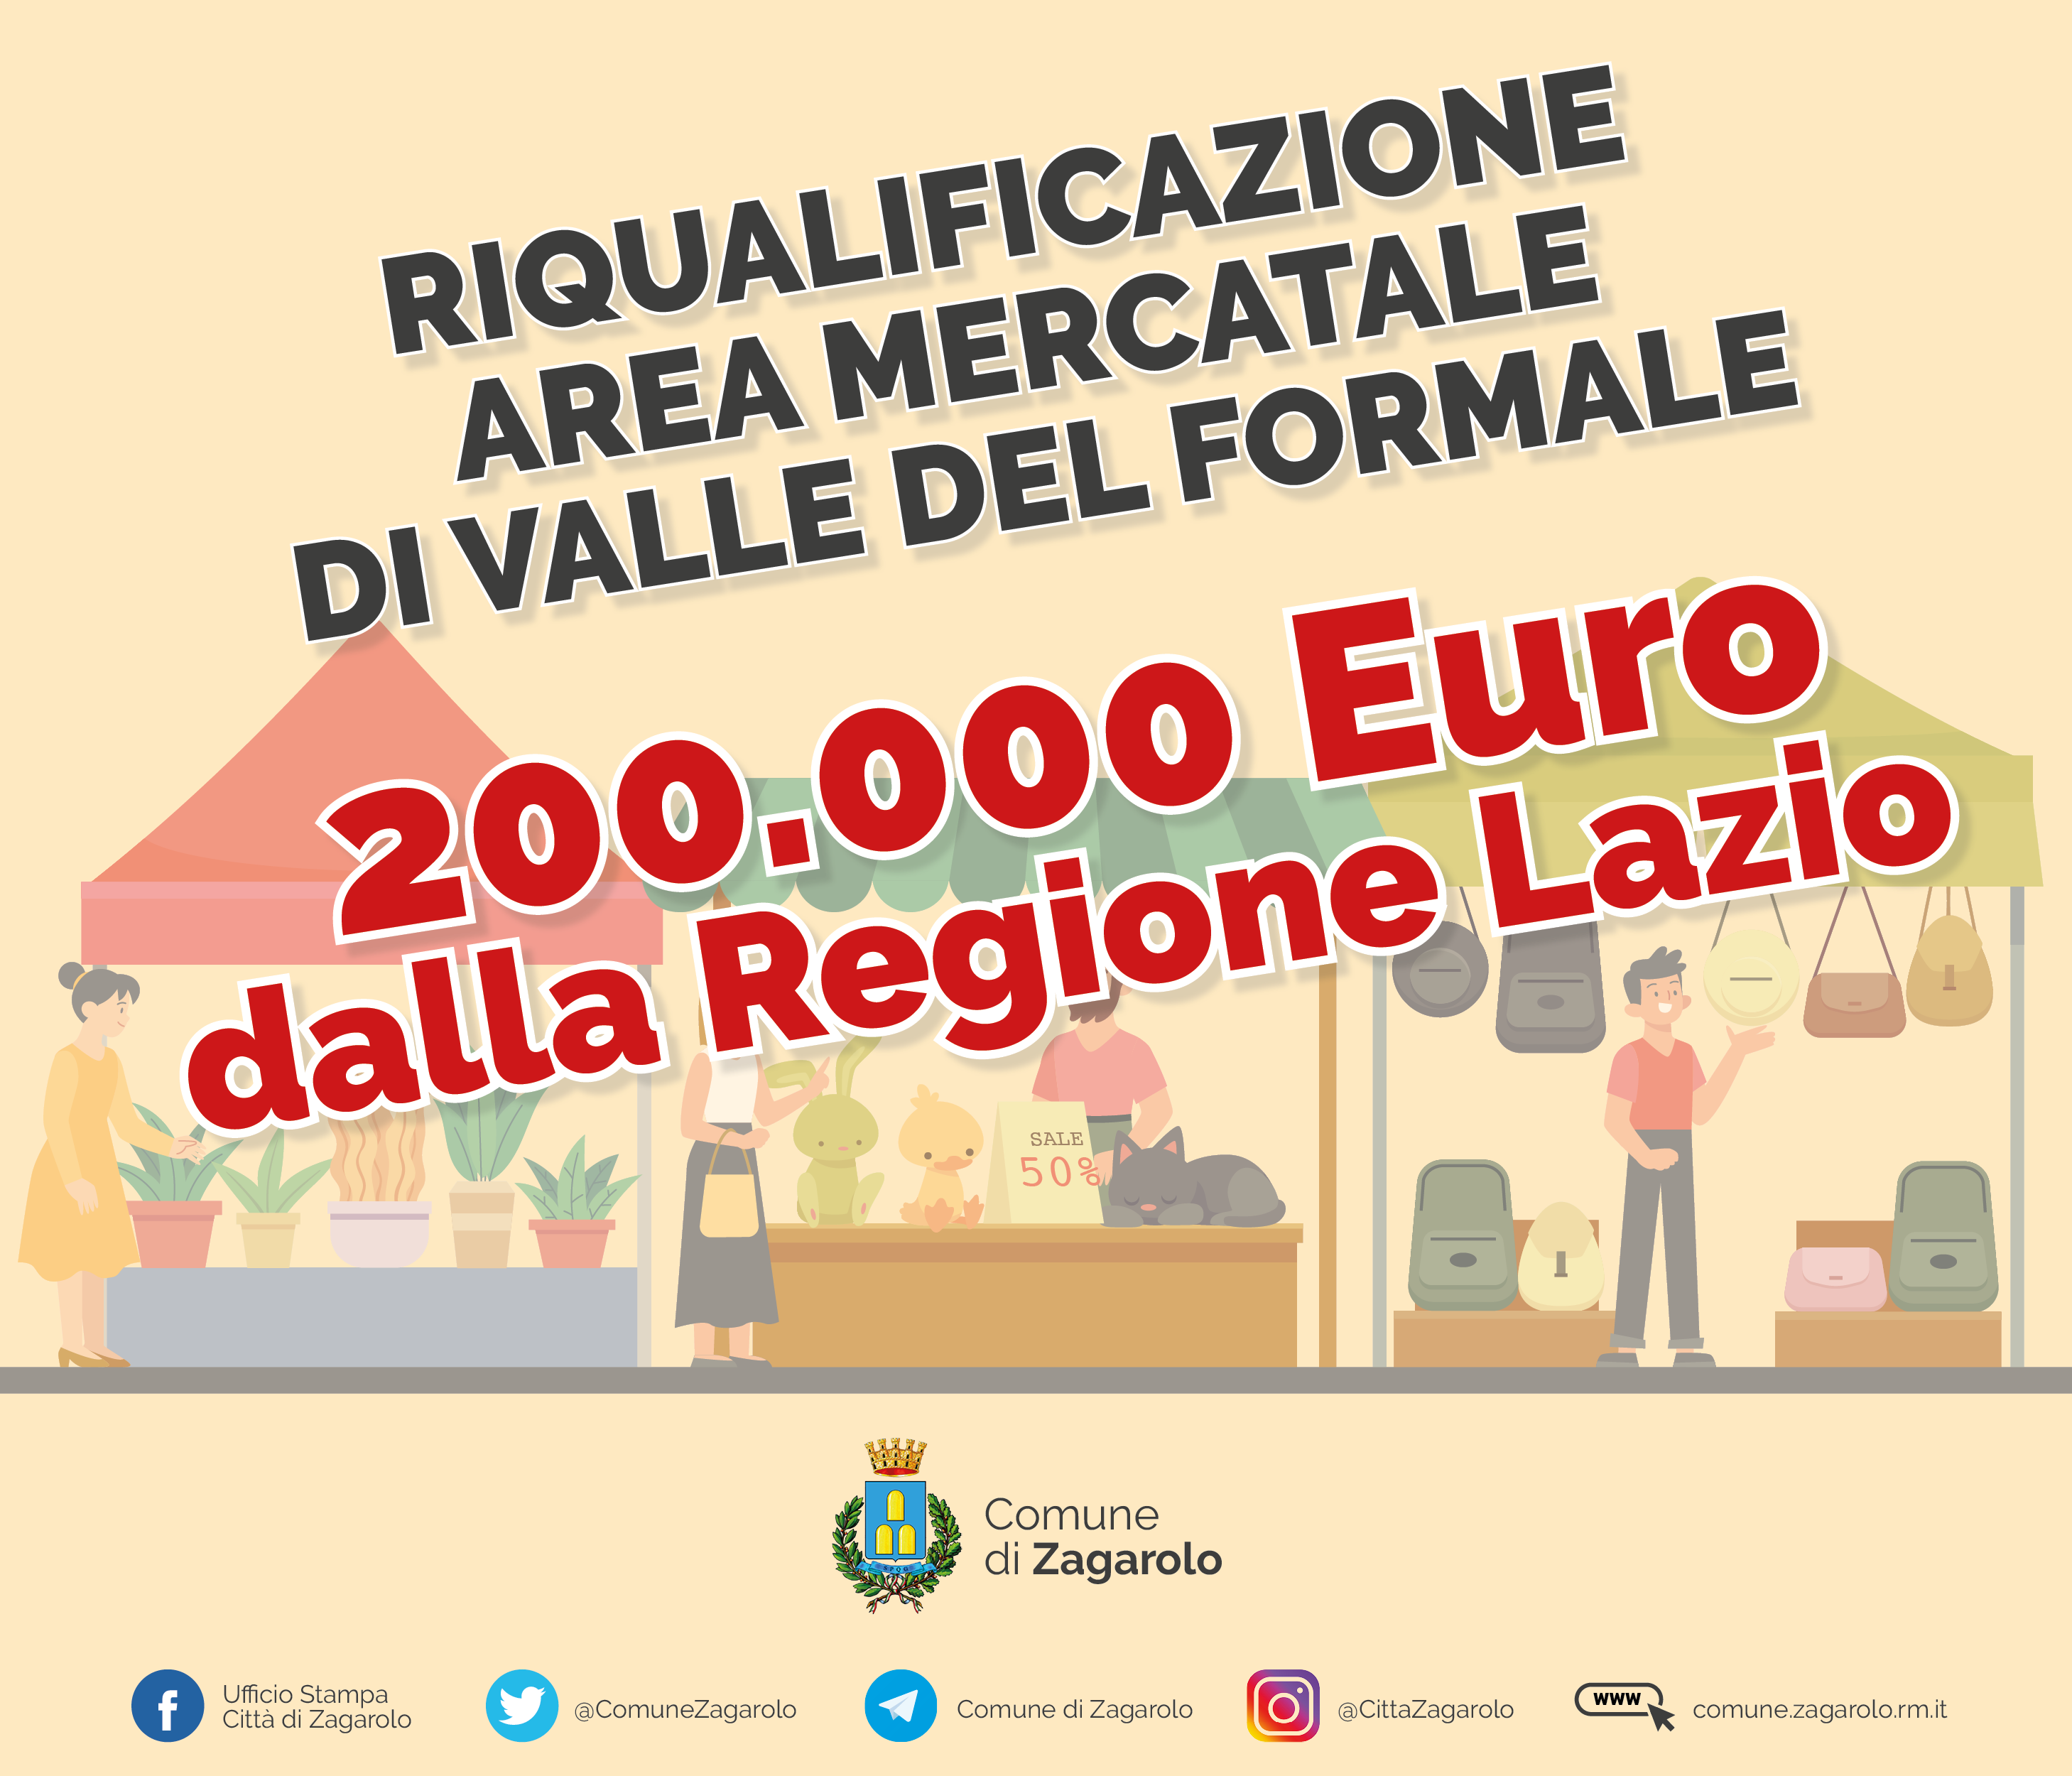 AREA MERCATALE DI VALLE DEL FORMALE, IN ARRIVO 200.000 EURO DALLA REGIONE LAZIO